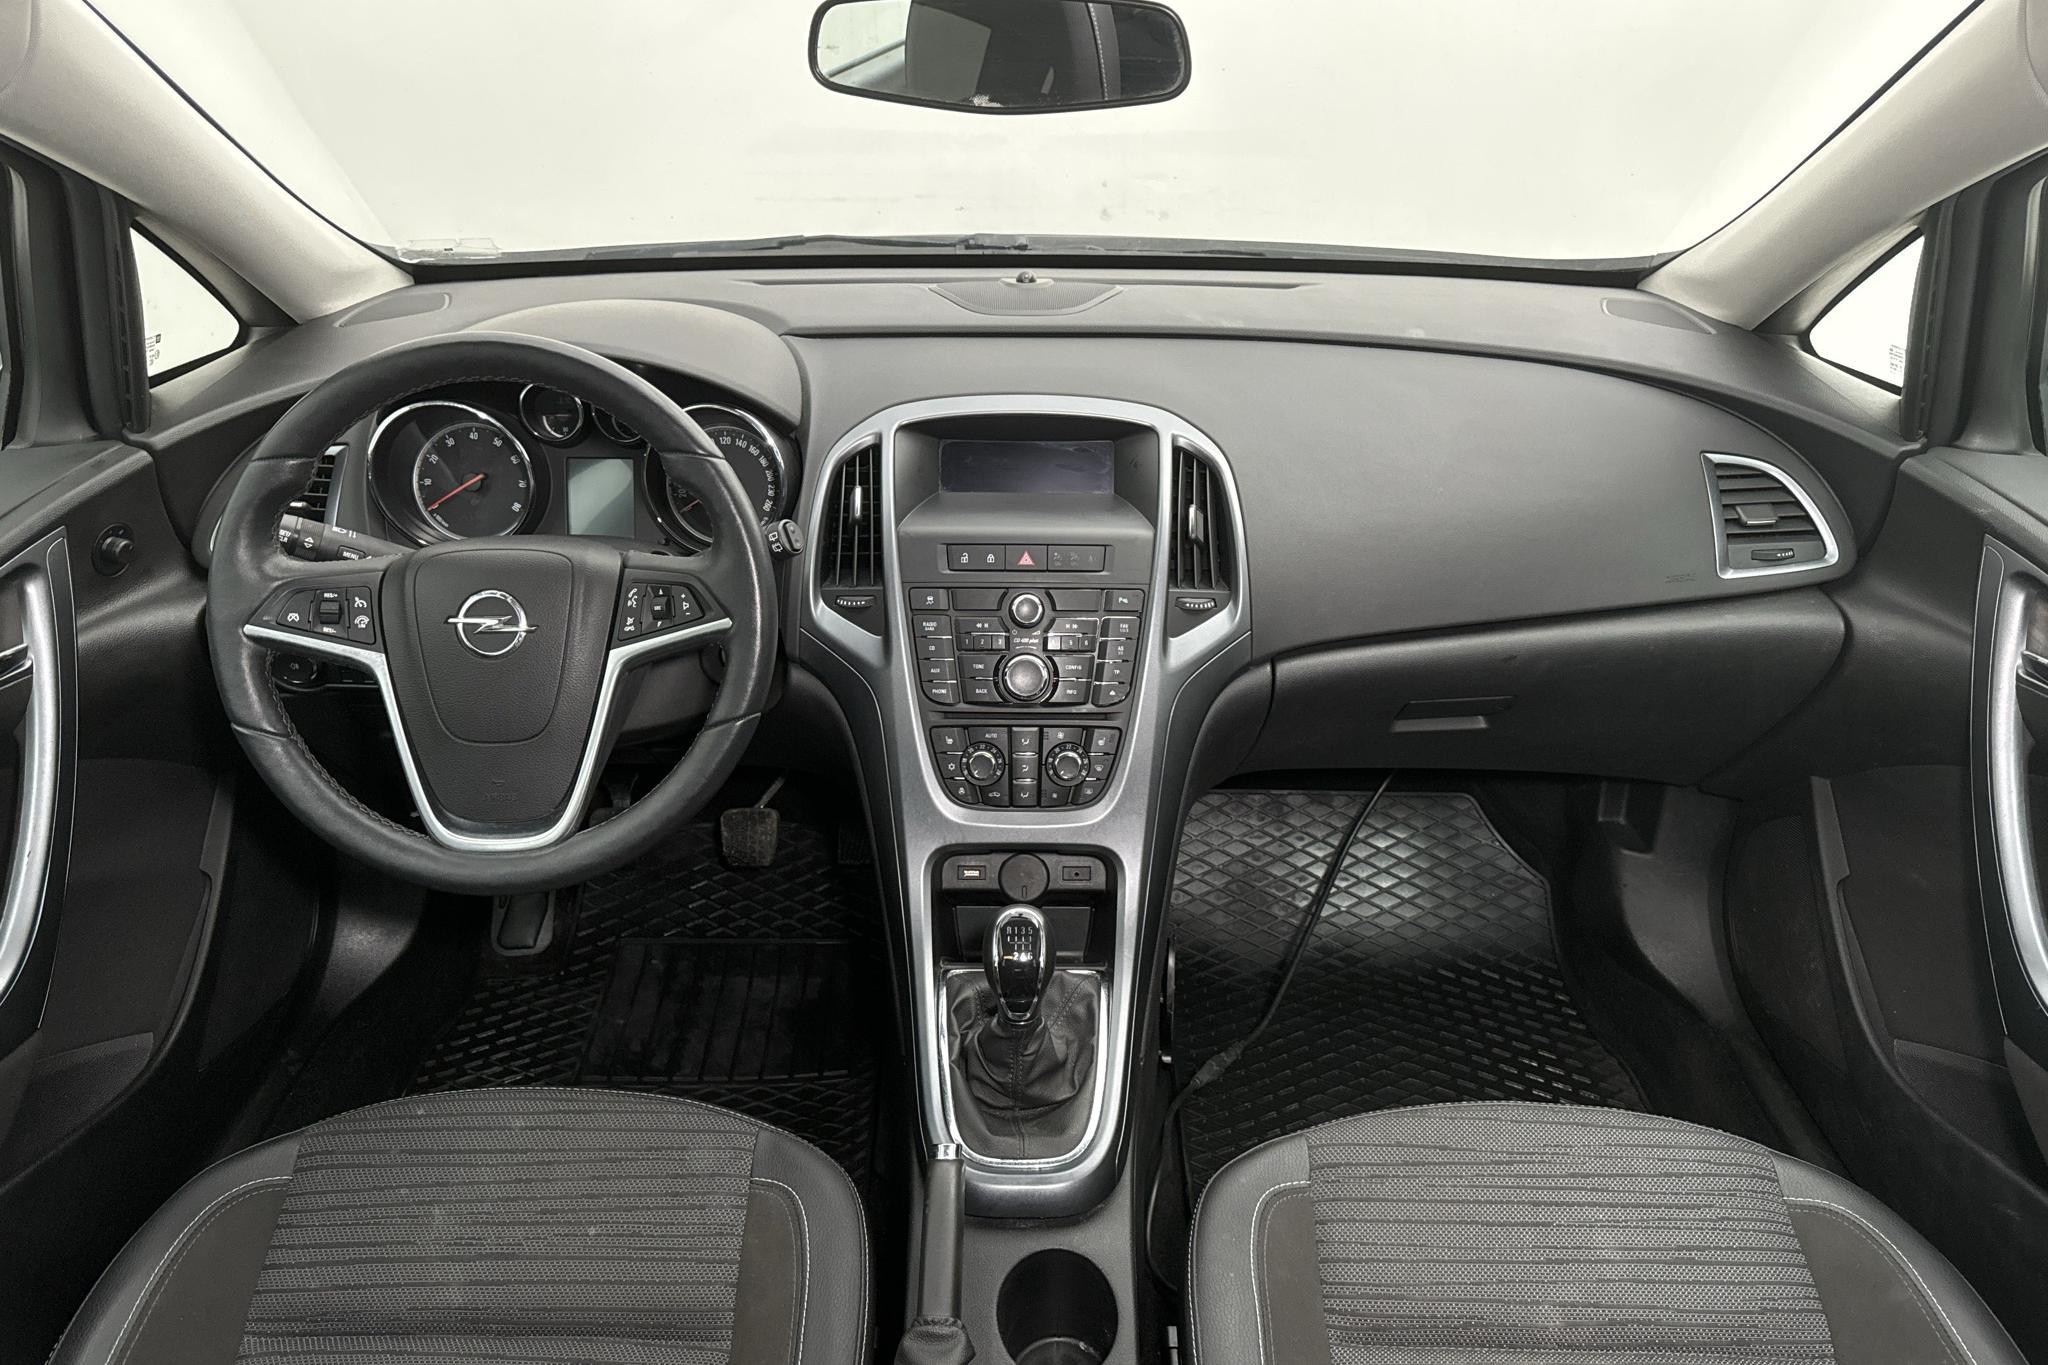 Opel Astra 1.4 Turbo ECOTEC 5dr (140hk) - 83 710 km - Manual - black - 2014